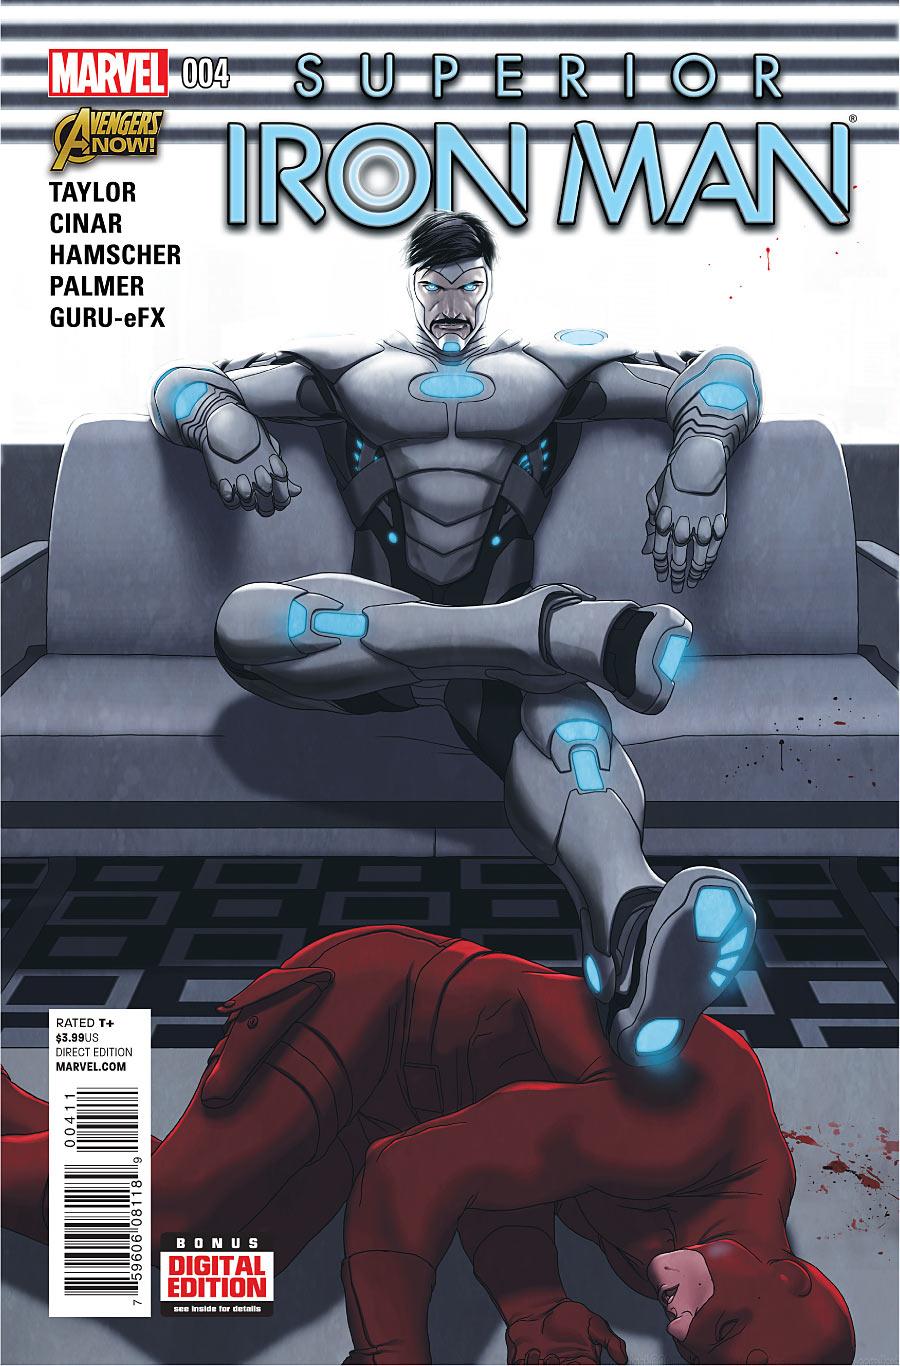 Superior Iron Man Vol. 1 #4